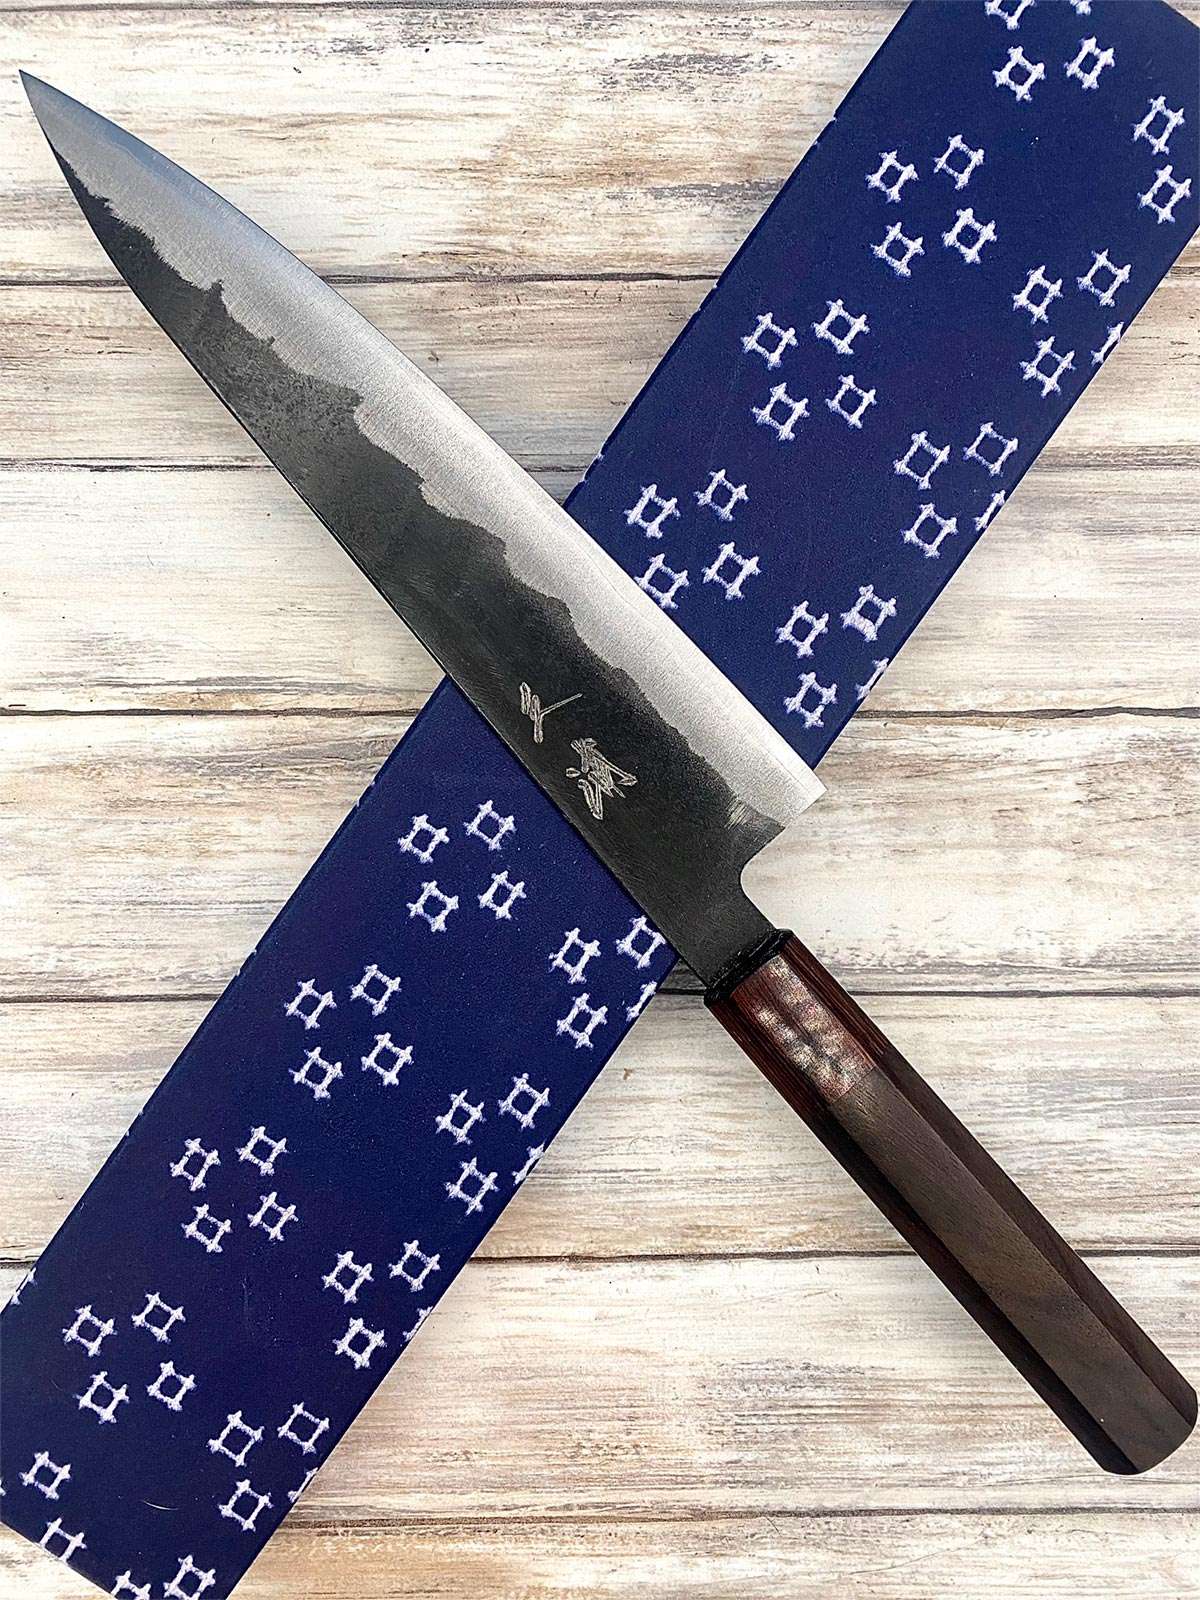 Acheter un Couteau Japonais artisanal Gyuto aogami super Kurouchi à Paris meilleur vente de couteaux de cuisine nippon grande marque de qualité